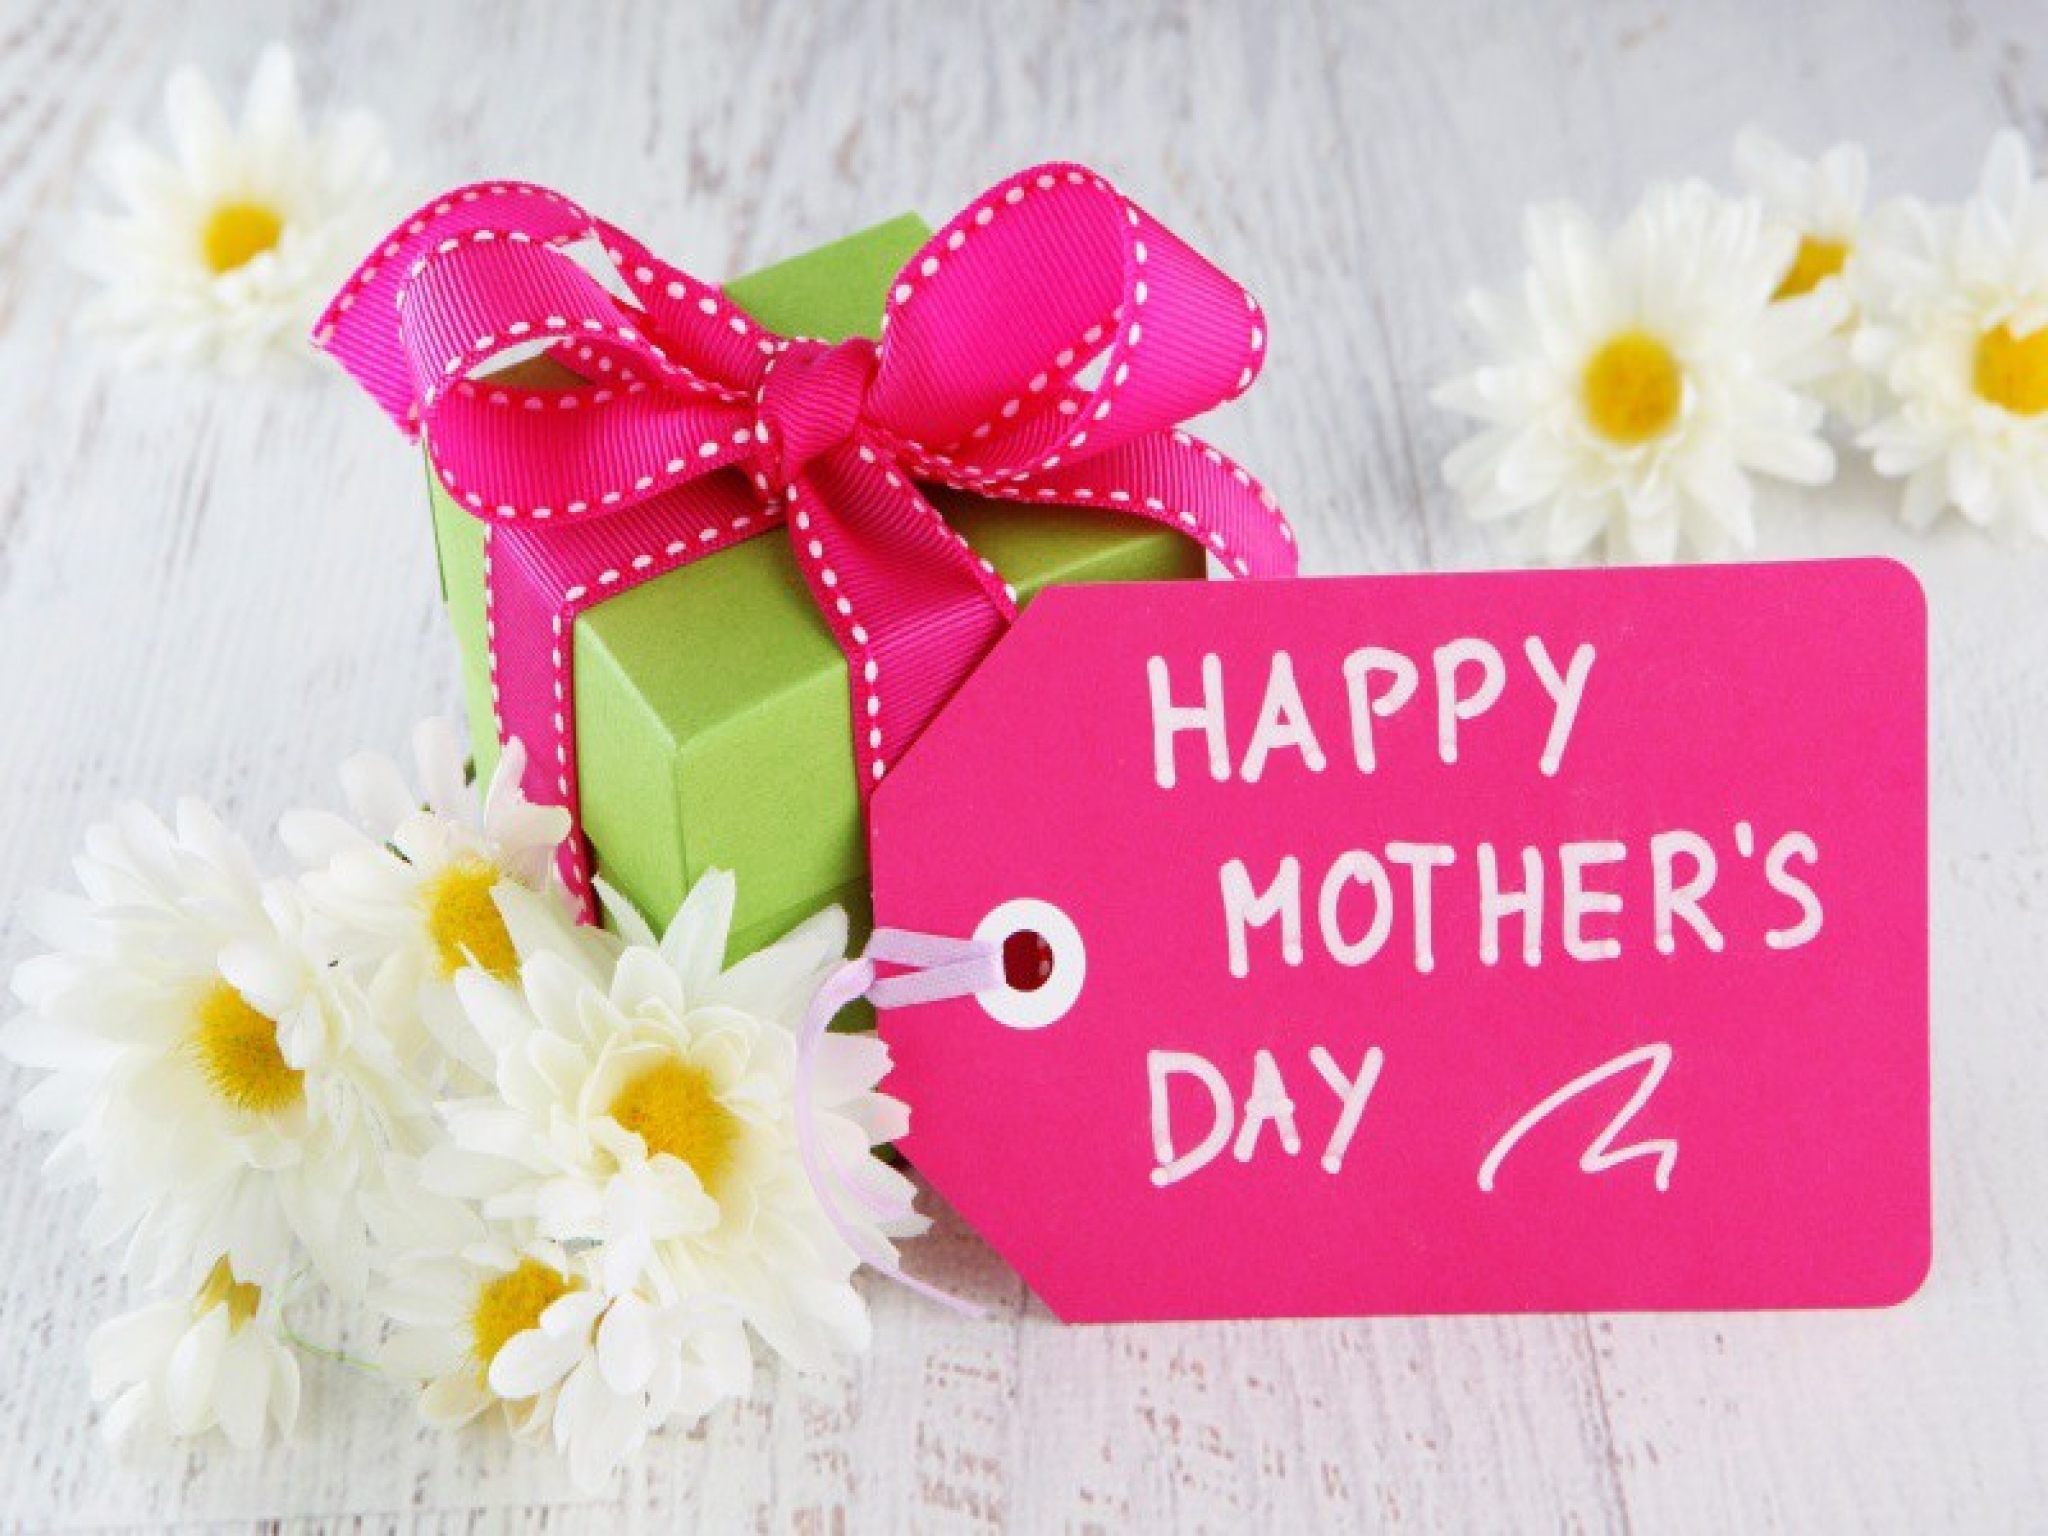 صور وكروت وبطاقات معايدة لعيد الأم - Happy Mother's Day 2020 191